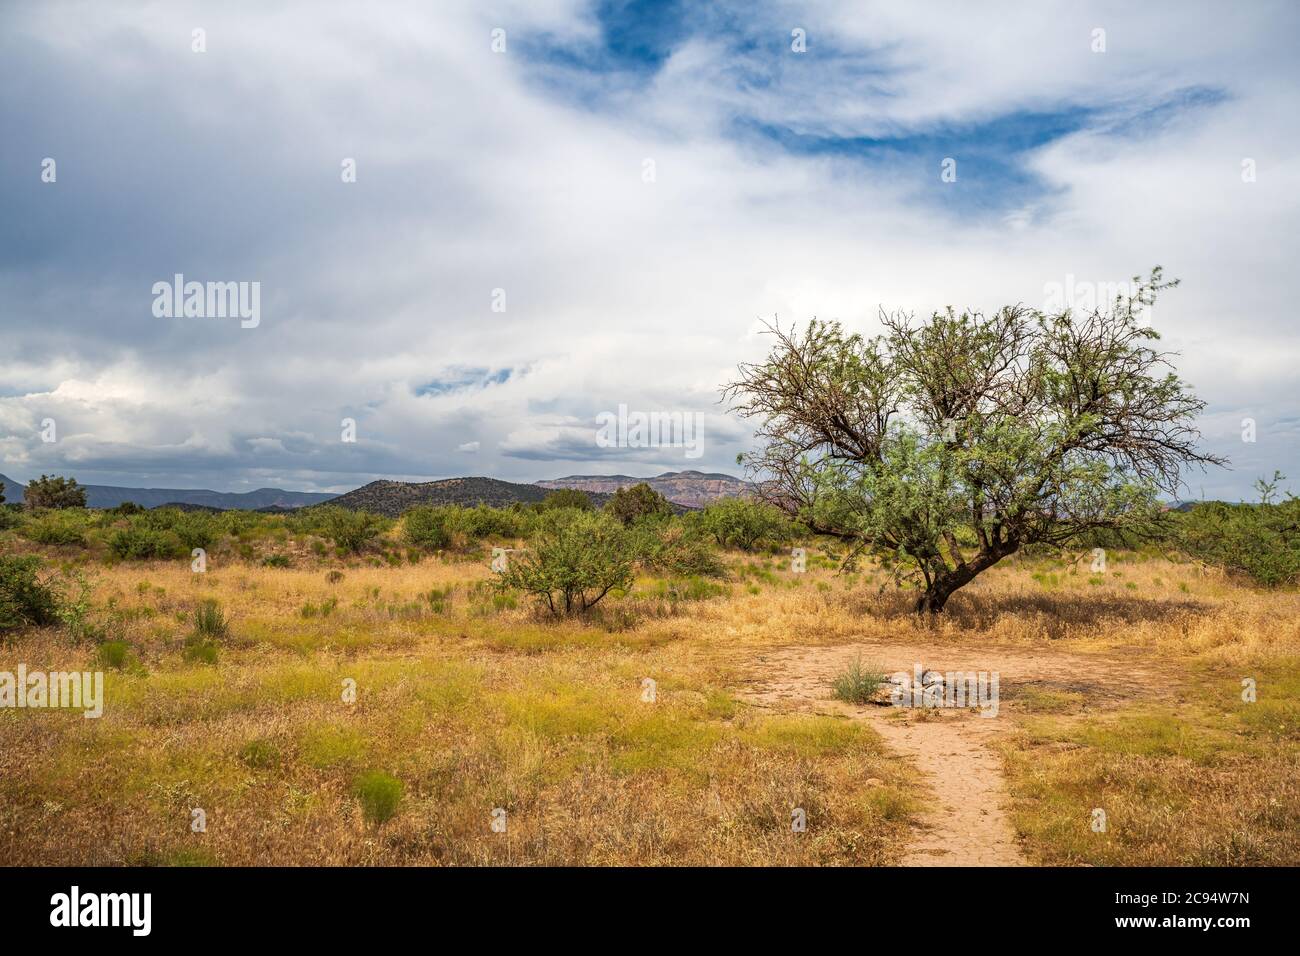 Un arbre de Mesquite dans une zone herbacée du désert avant une mousson d'été Banque D'Images